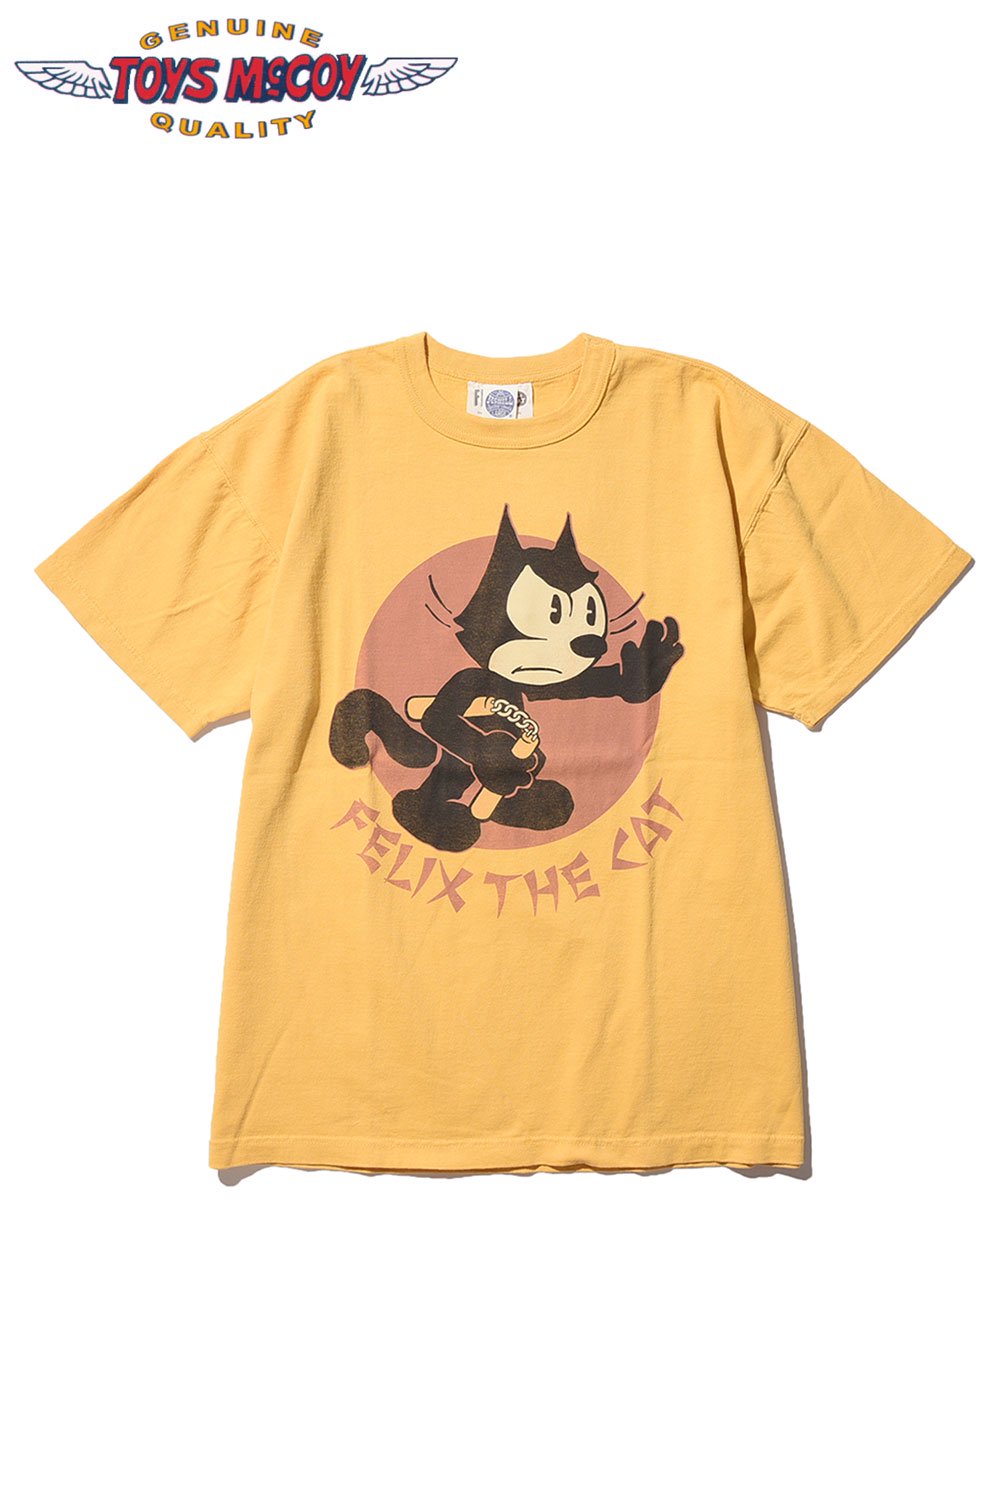 TOYS McCOY(トイズマッコイ) Tシャツ FELIX THE CAT TEE 